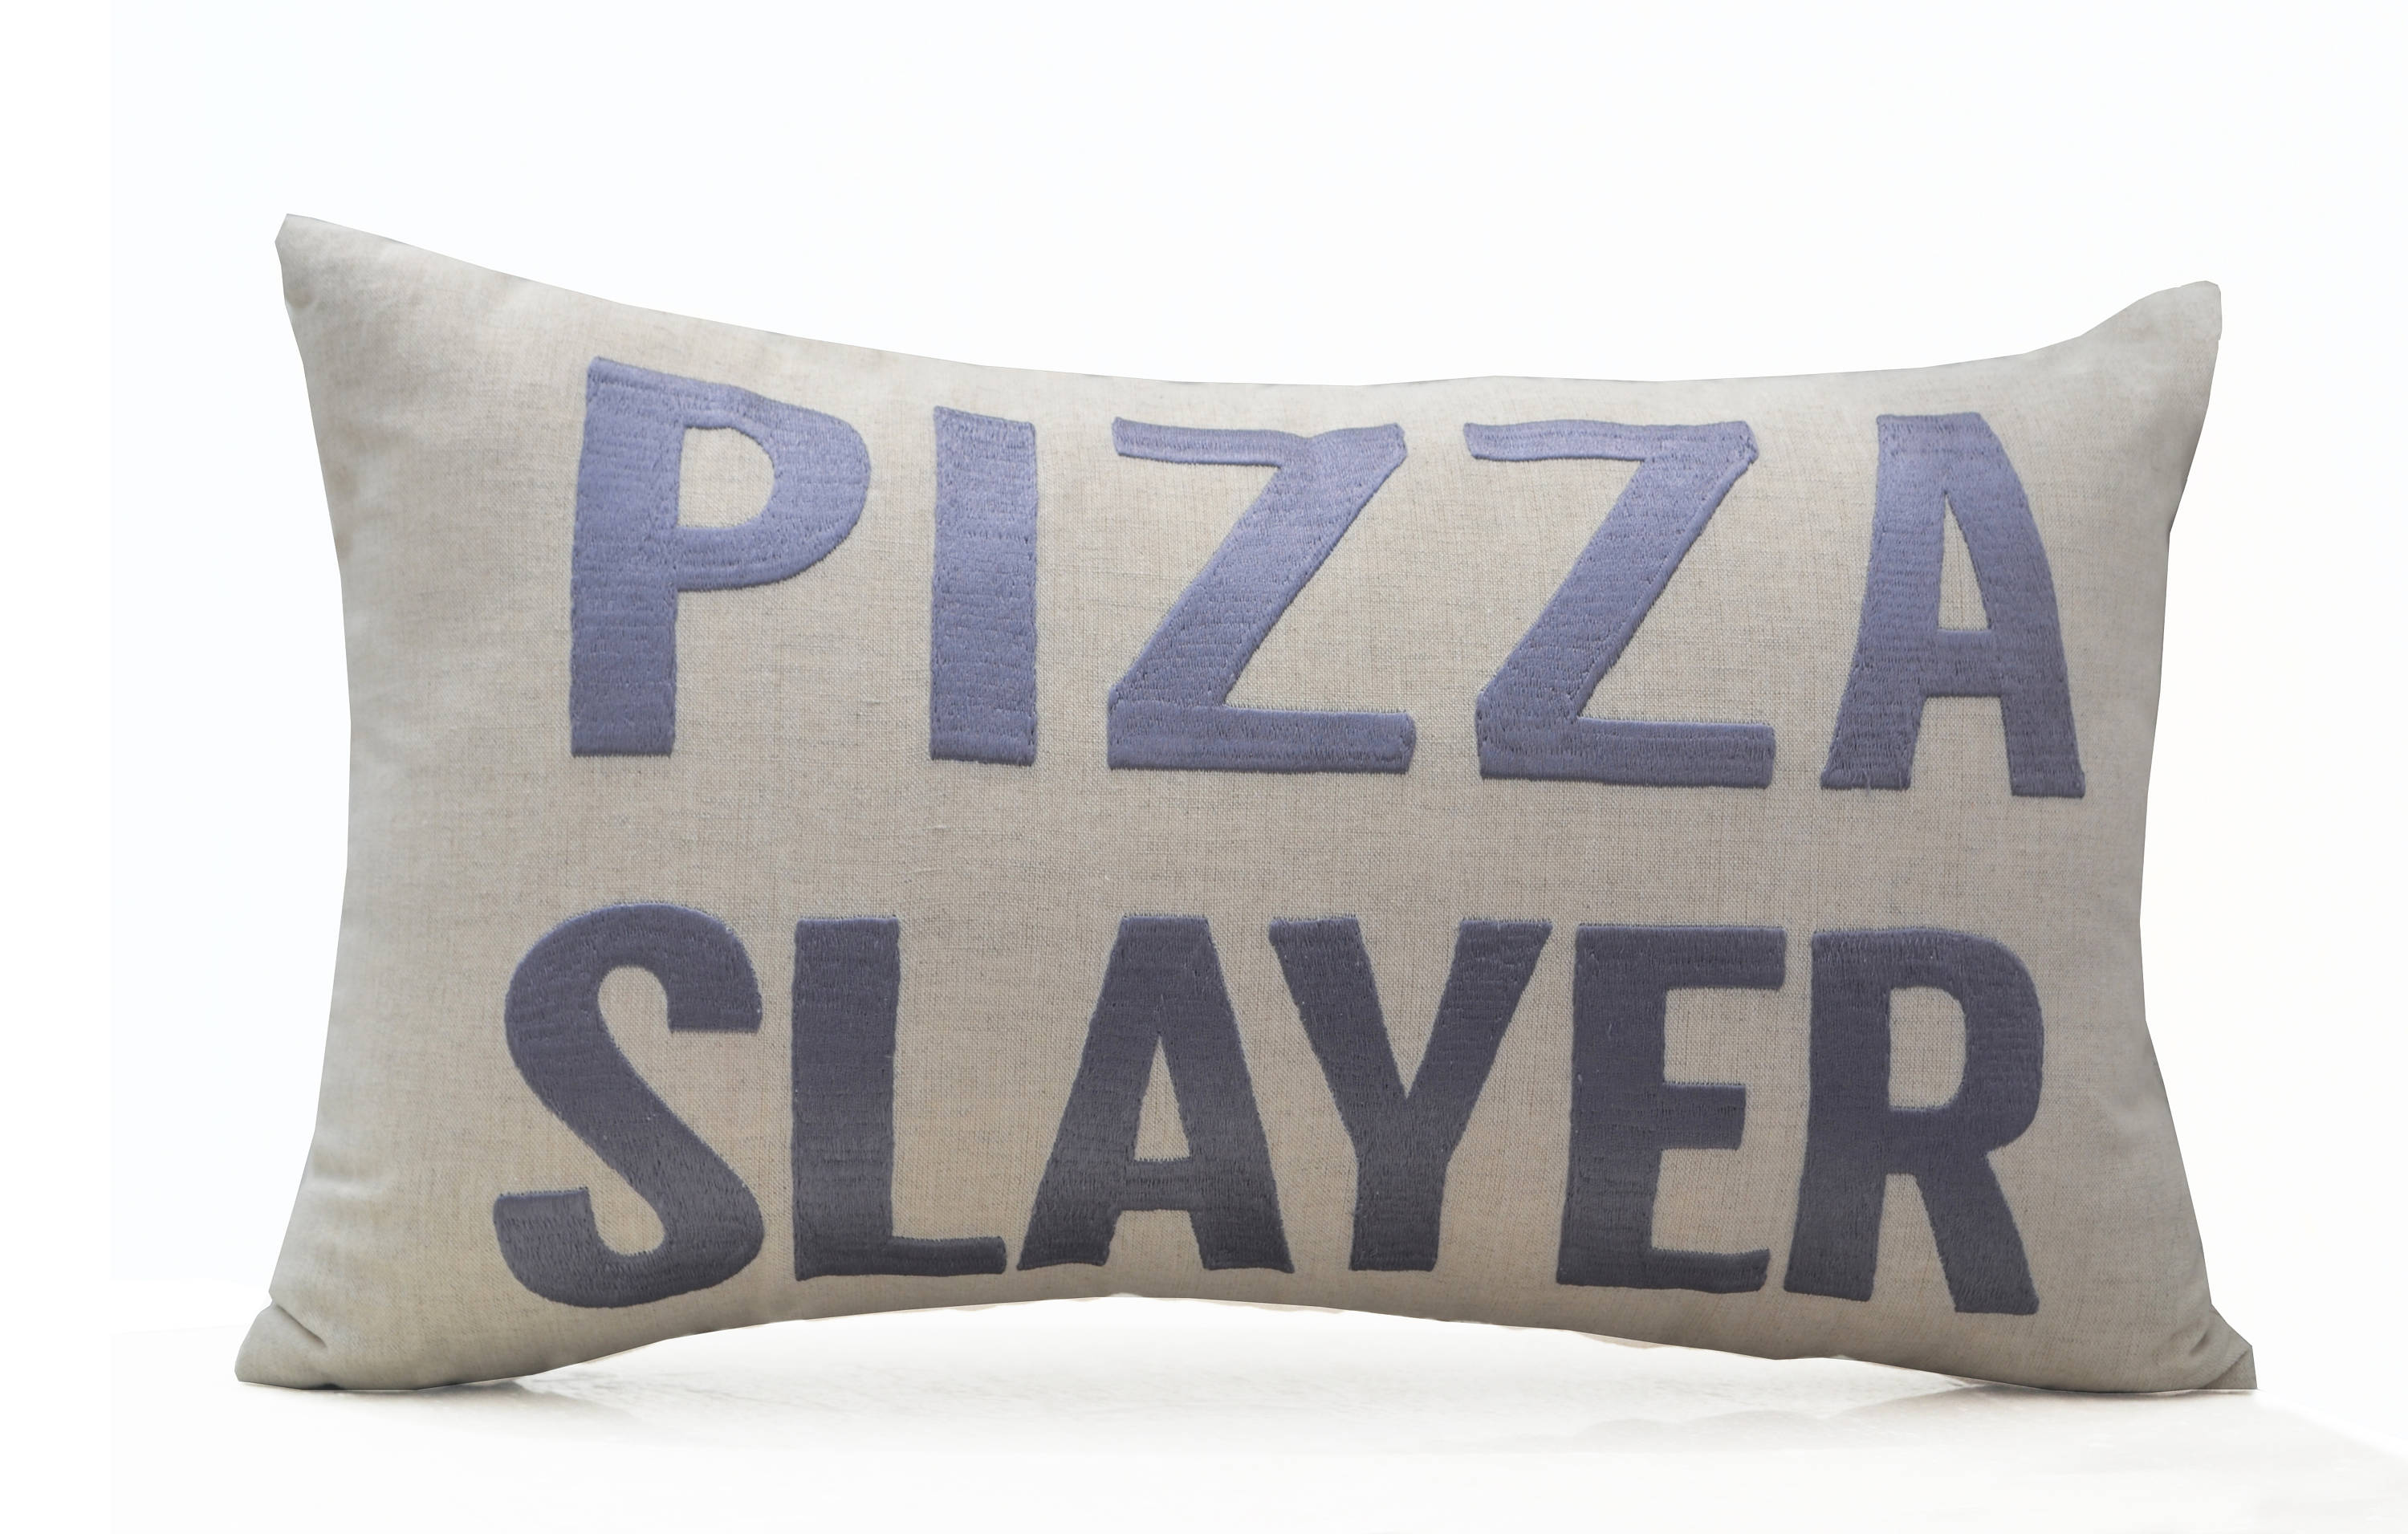 Pizza lover pillow, pizza saying pillow, linen pillow